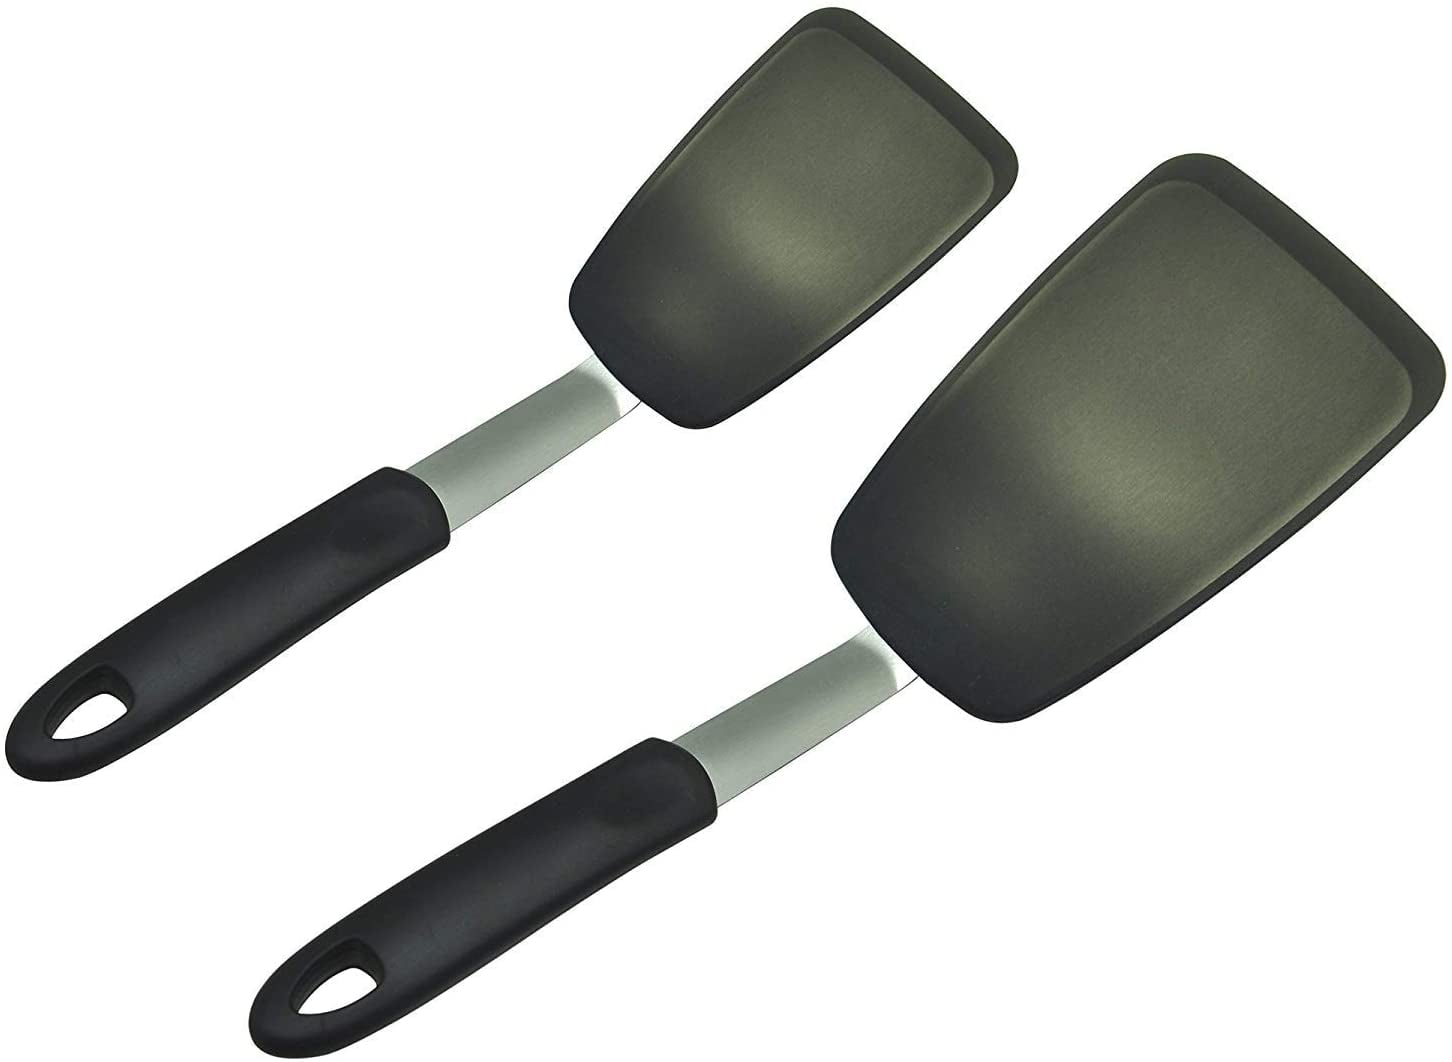 Jeexi Silicone Spatula Set, 2 Flexible Turners for Non-Stick